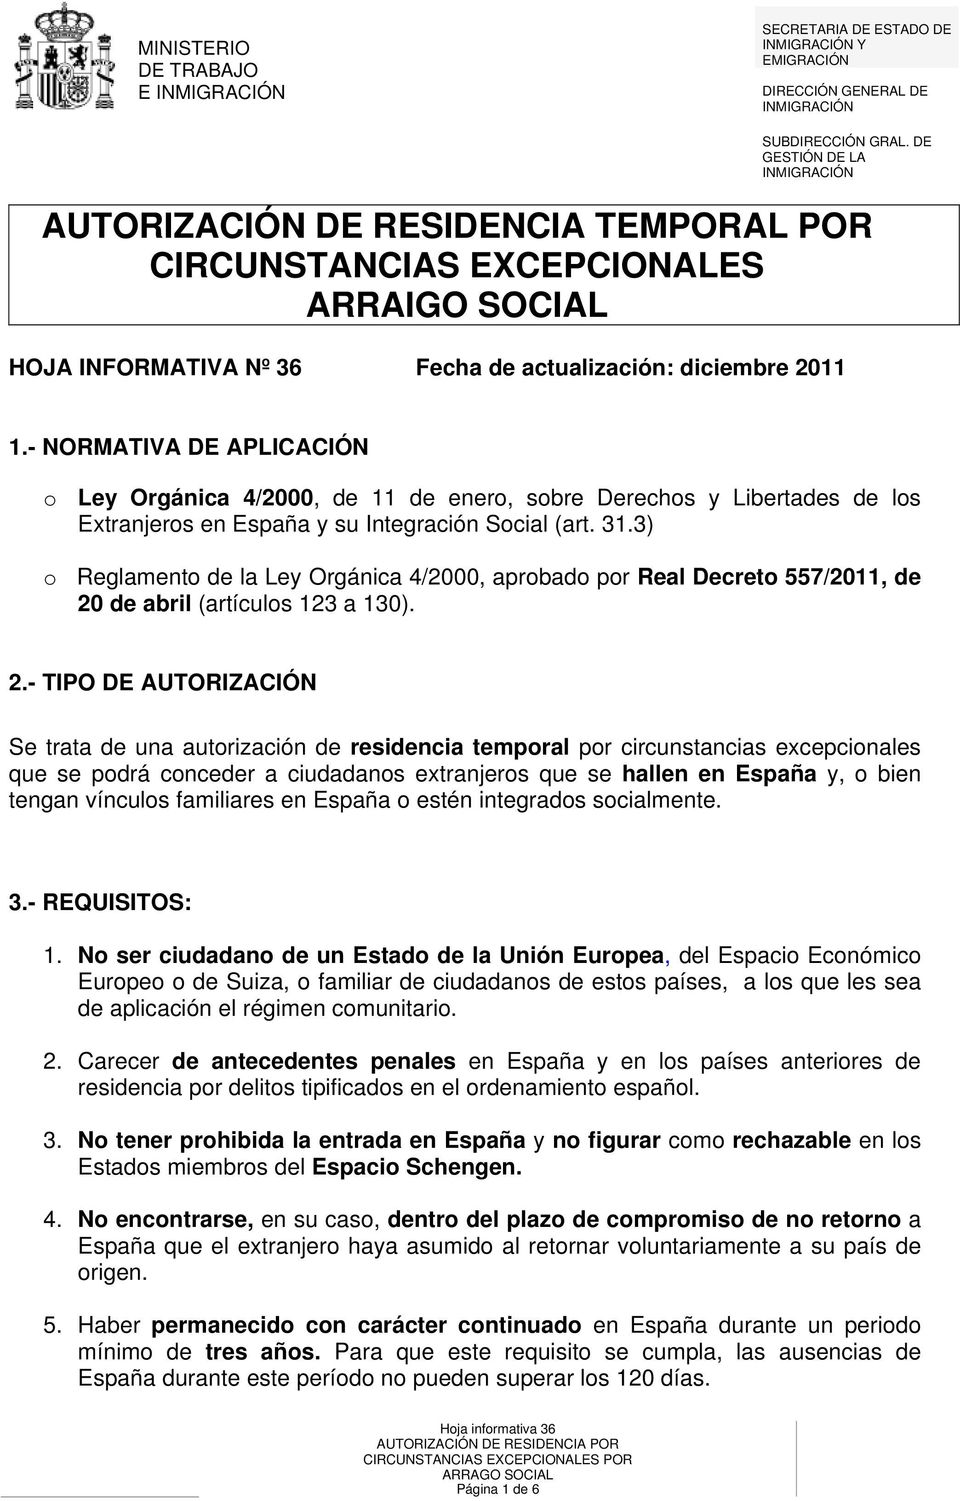 - NORMATIVA DE APLICACIÓN o Ley Orgánica 4/2000, de 11 de enero, sobre Derechos y Libertades de los Extranjeros en España y su Integración Social (art. 31.